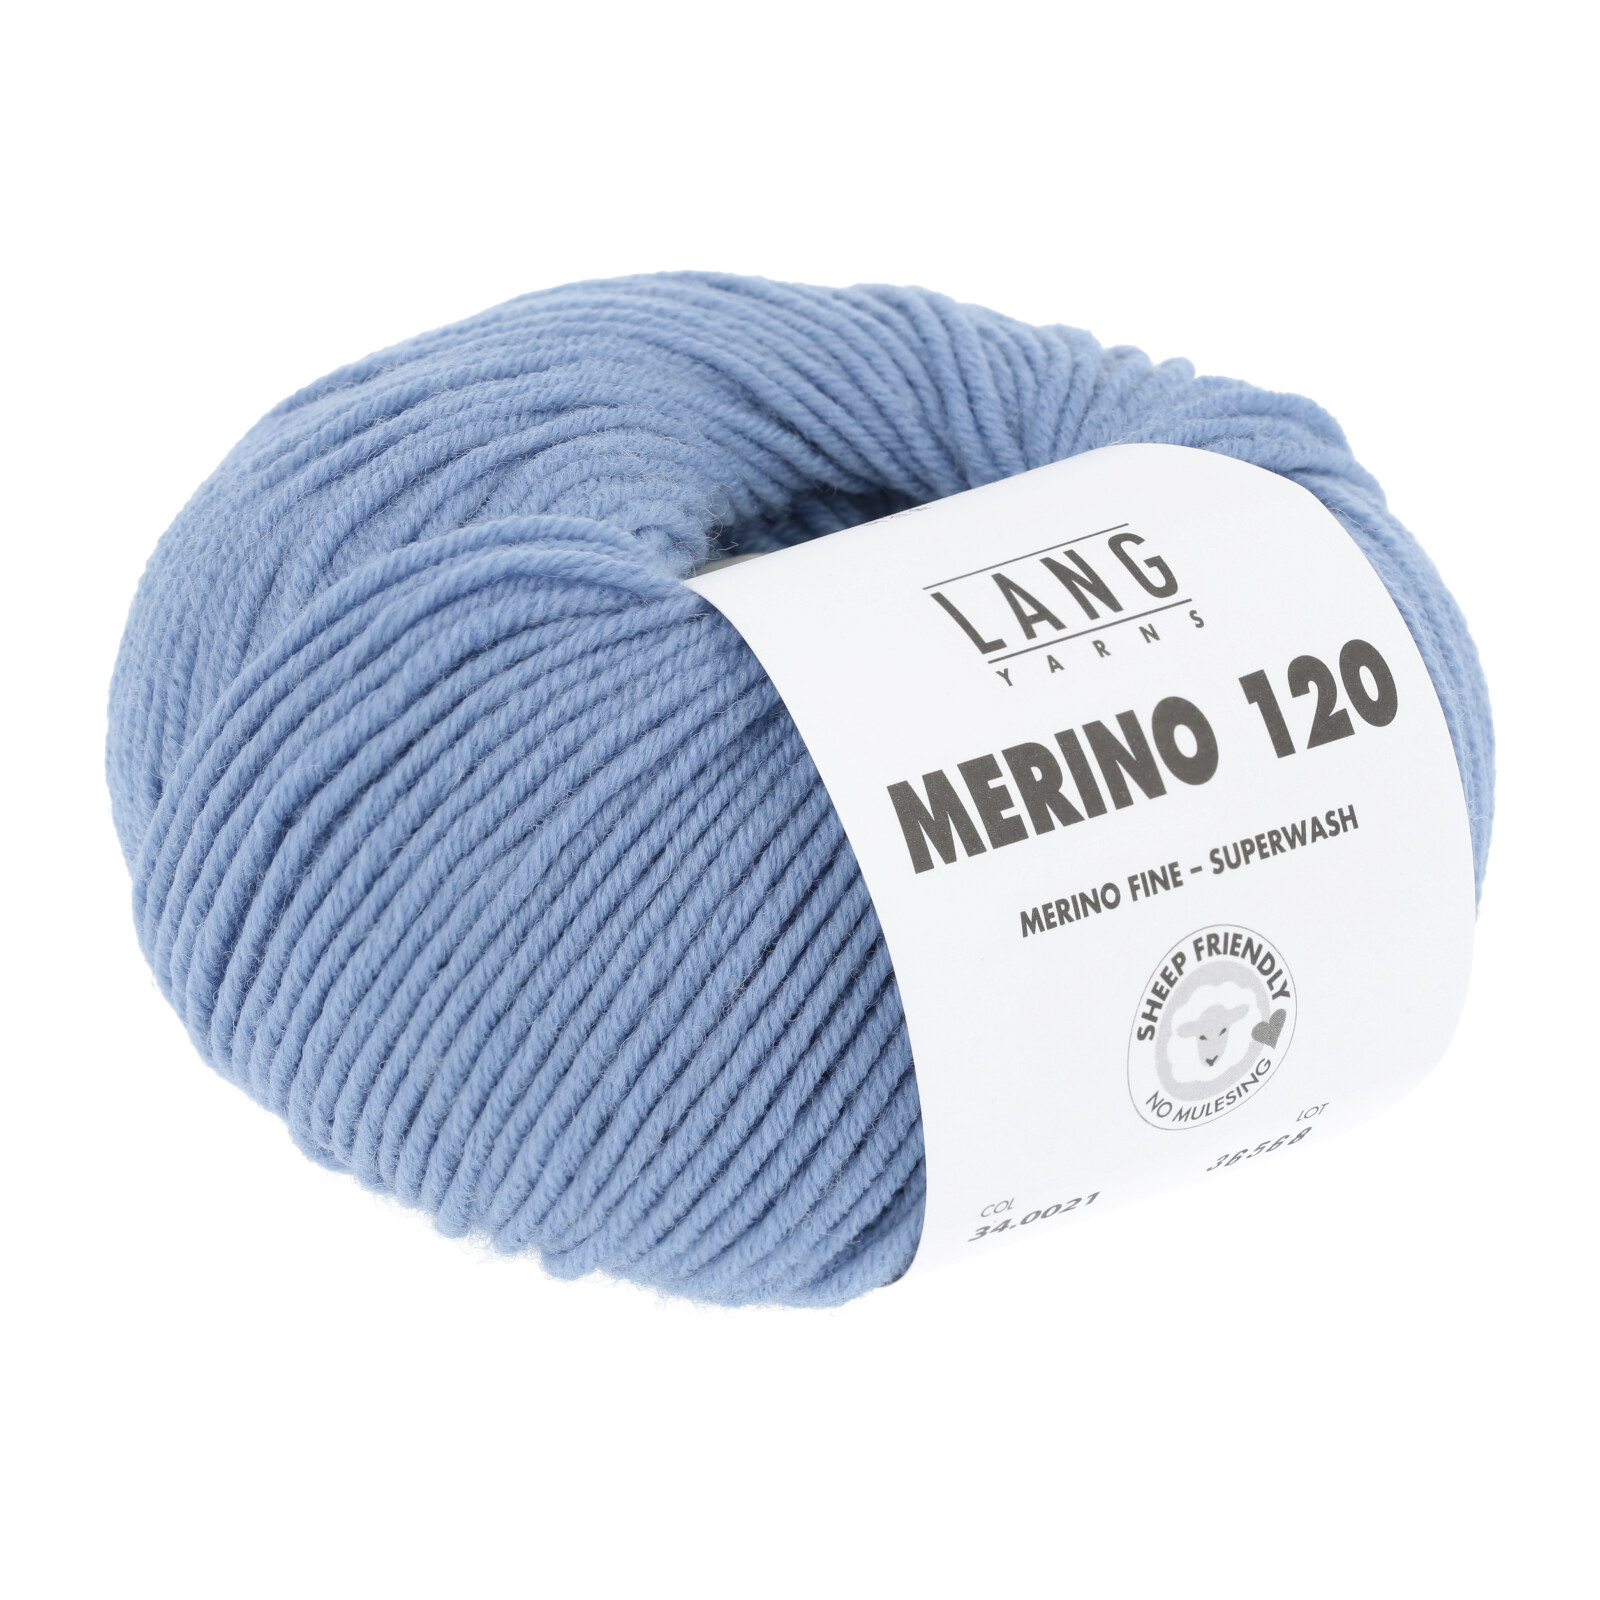 LANG Merino 120